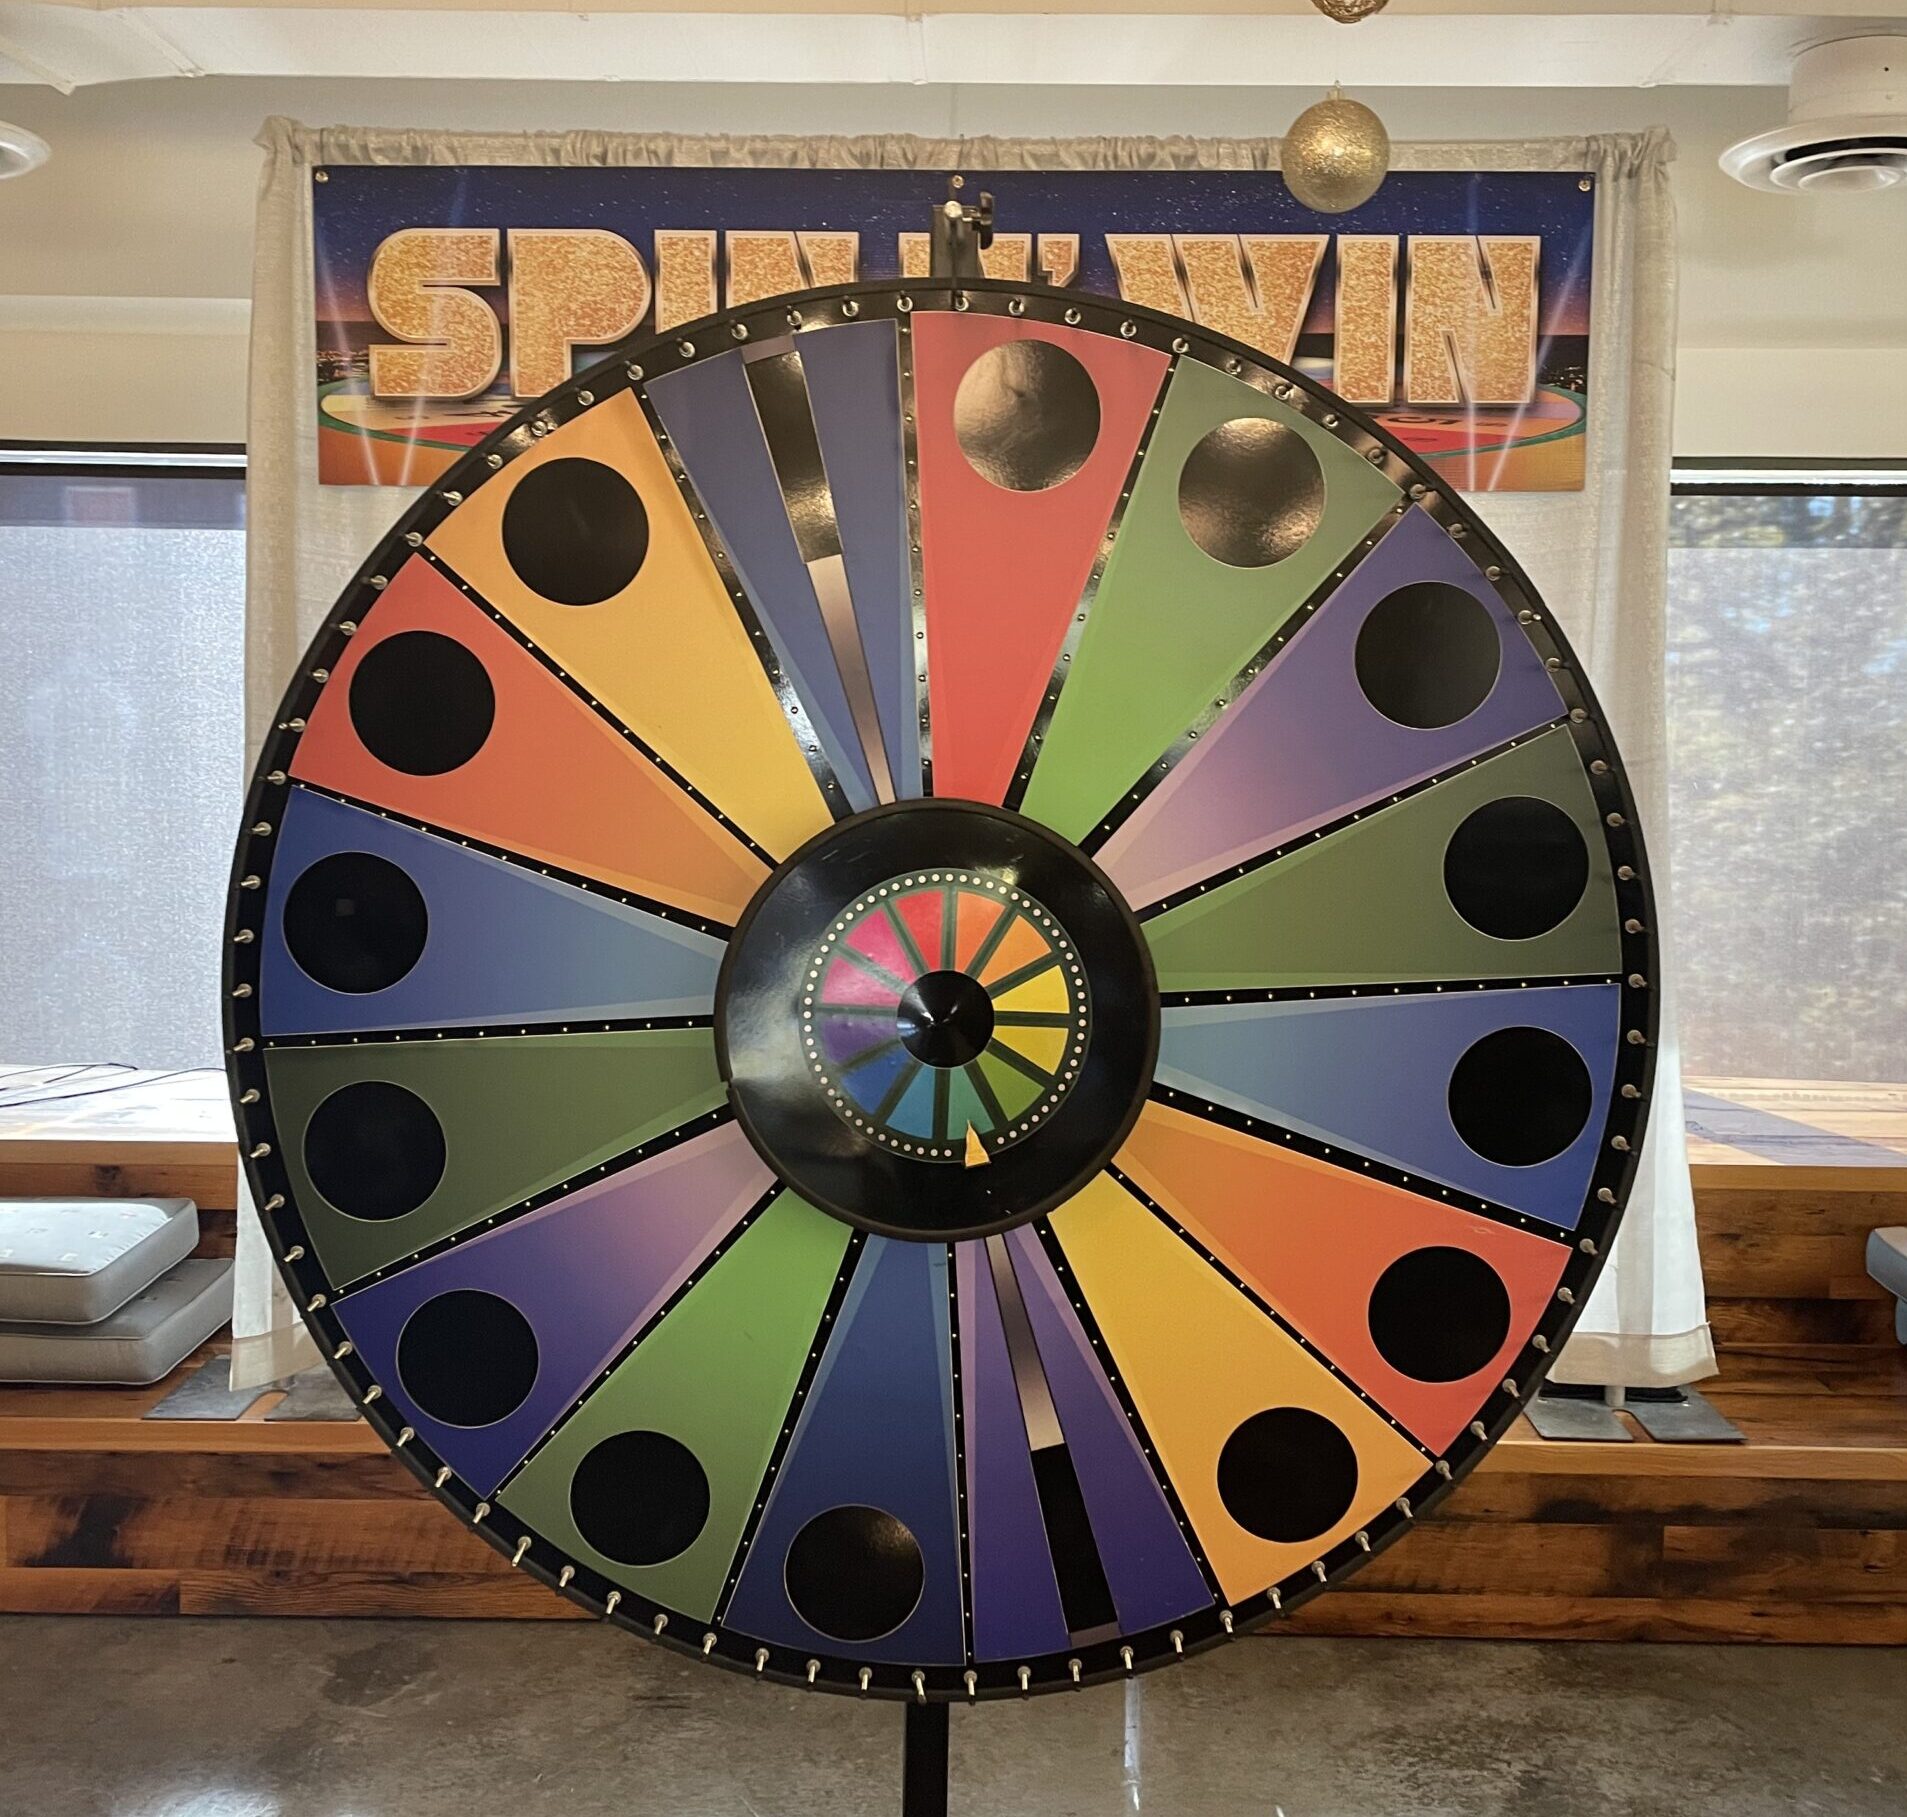 Prize Wheel Spinner Wheel of Fortune Spinner Spin Wheel for Prizes